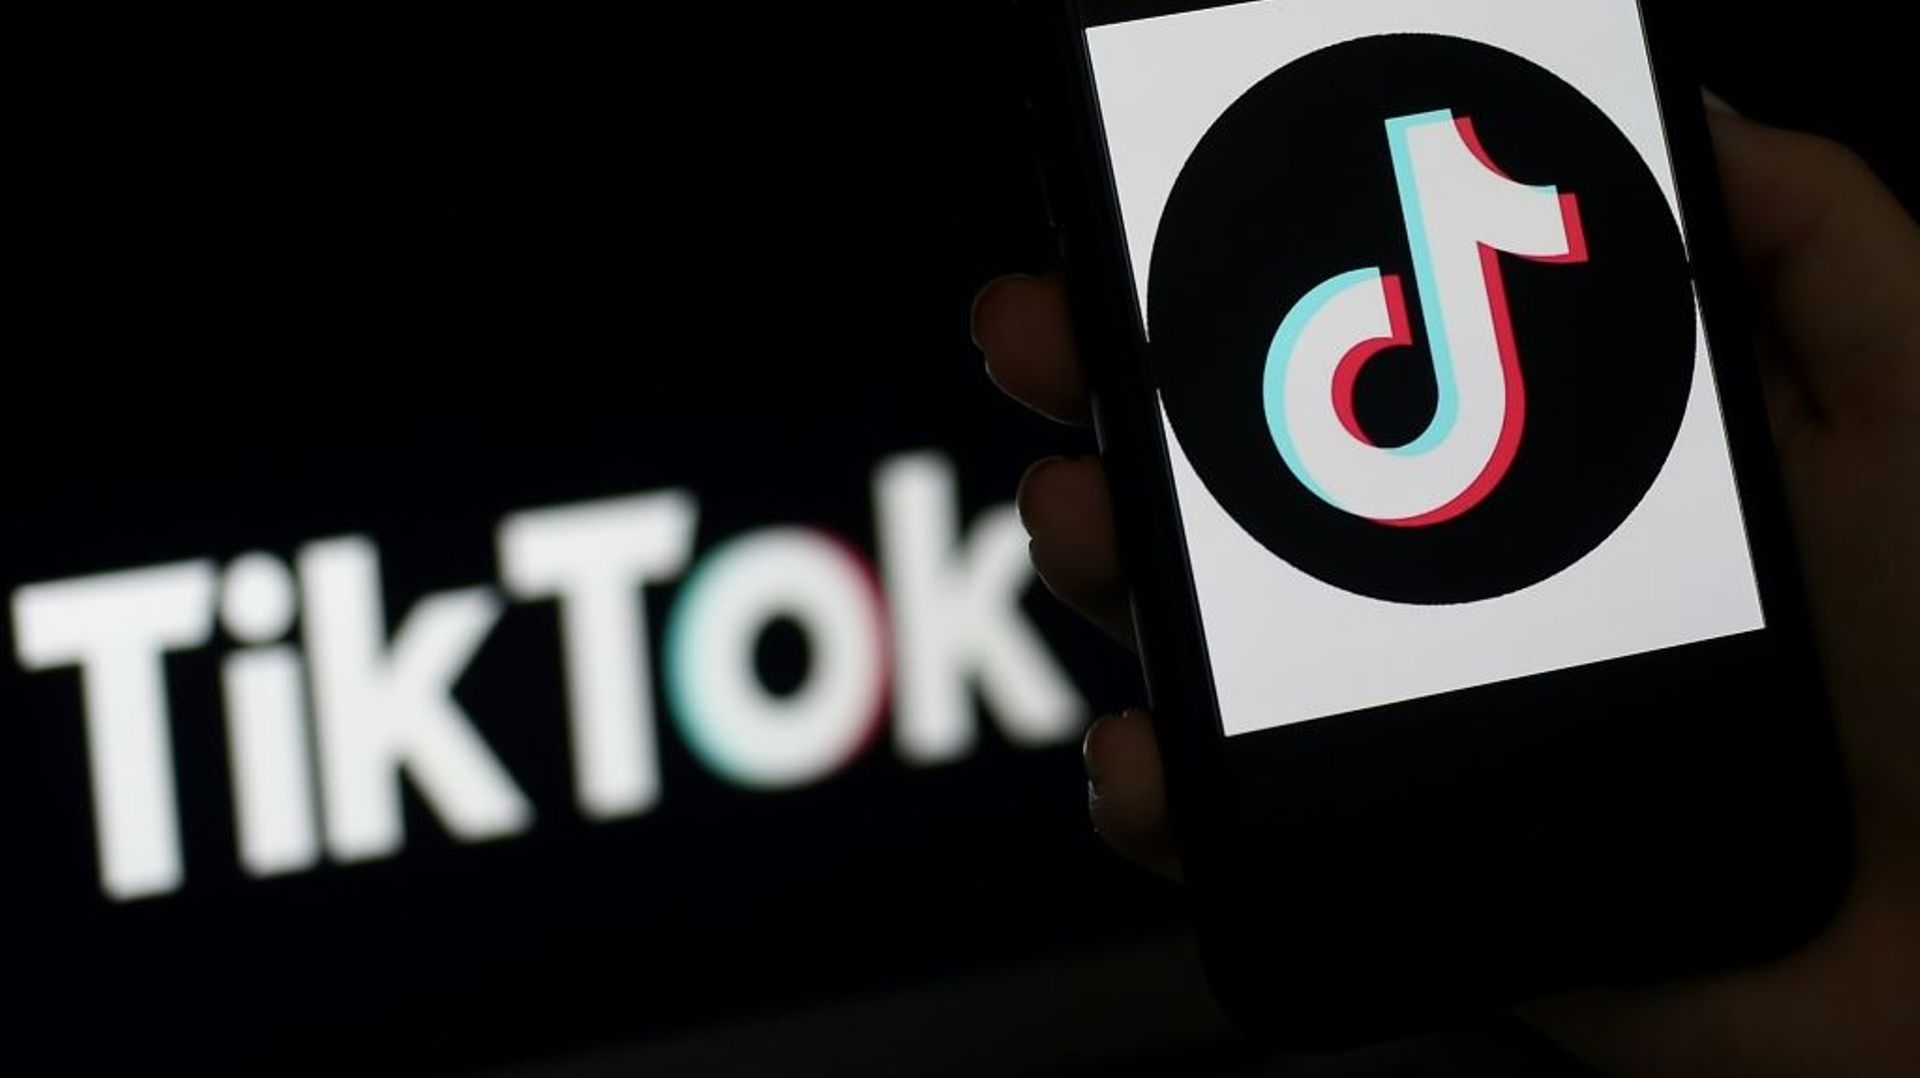 TikTok est très utilisé par les 15-25 ans et compte environ un milliard d'utilisateurs dans le monde